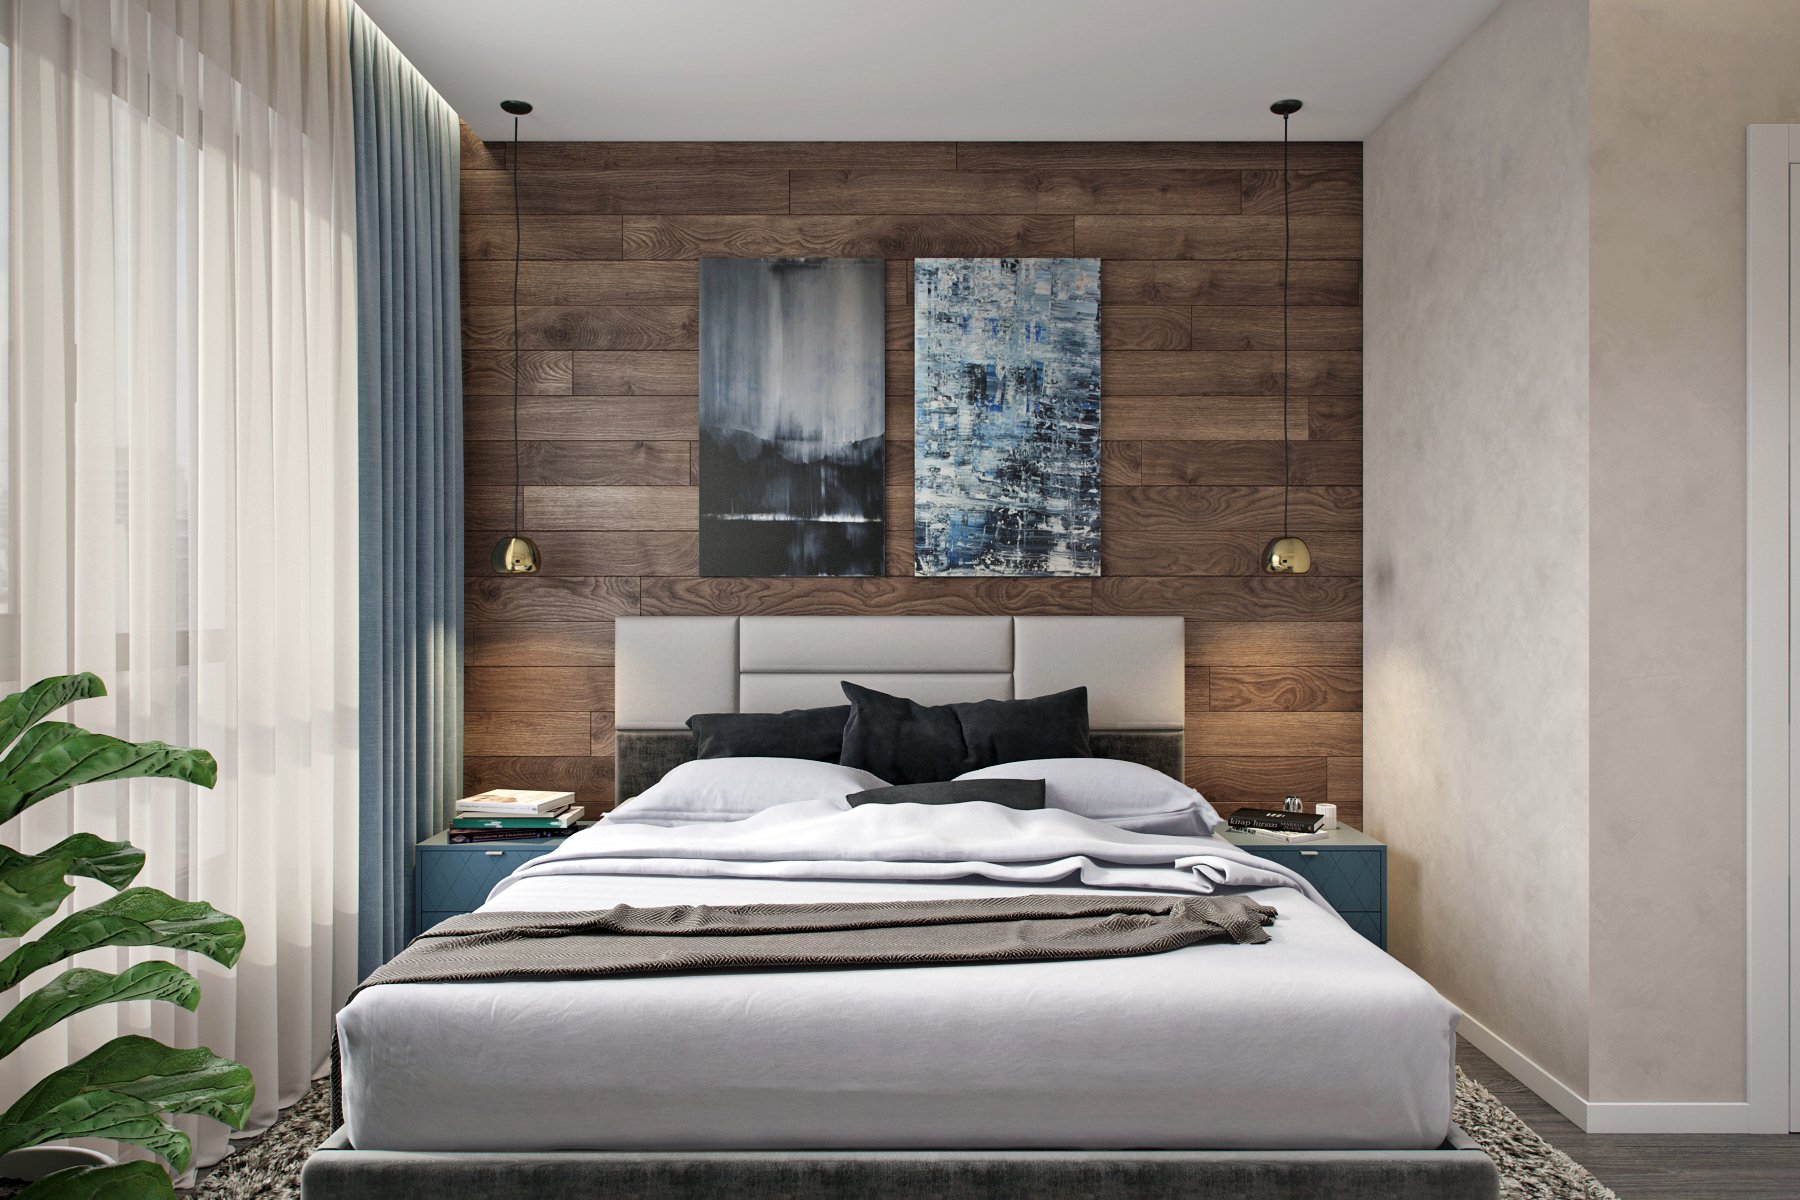 Красивые спальни - топ-170 фото и видео вариантов дизайна красивых спален. стильный интерьер маленьких и больших спален. выбор отделки, мебели, освещения и текстиля